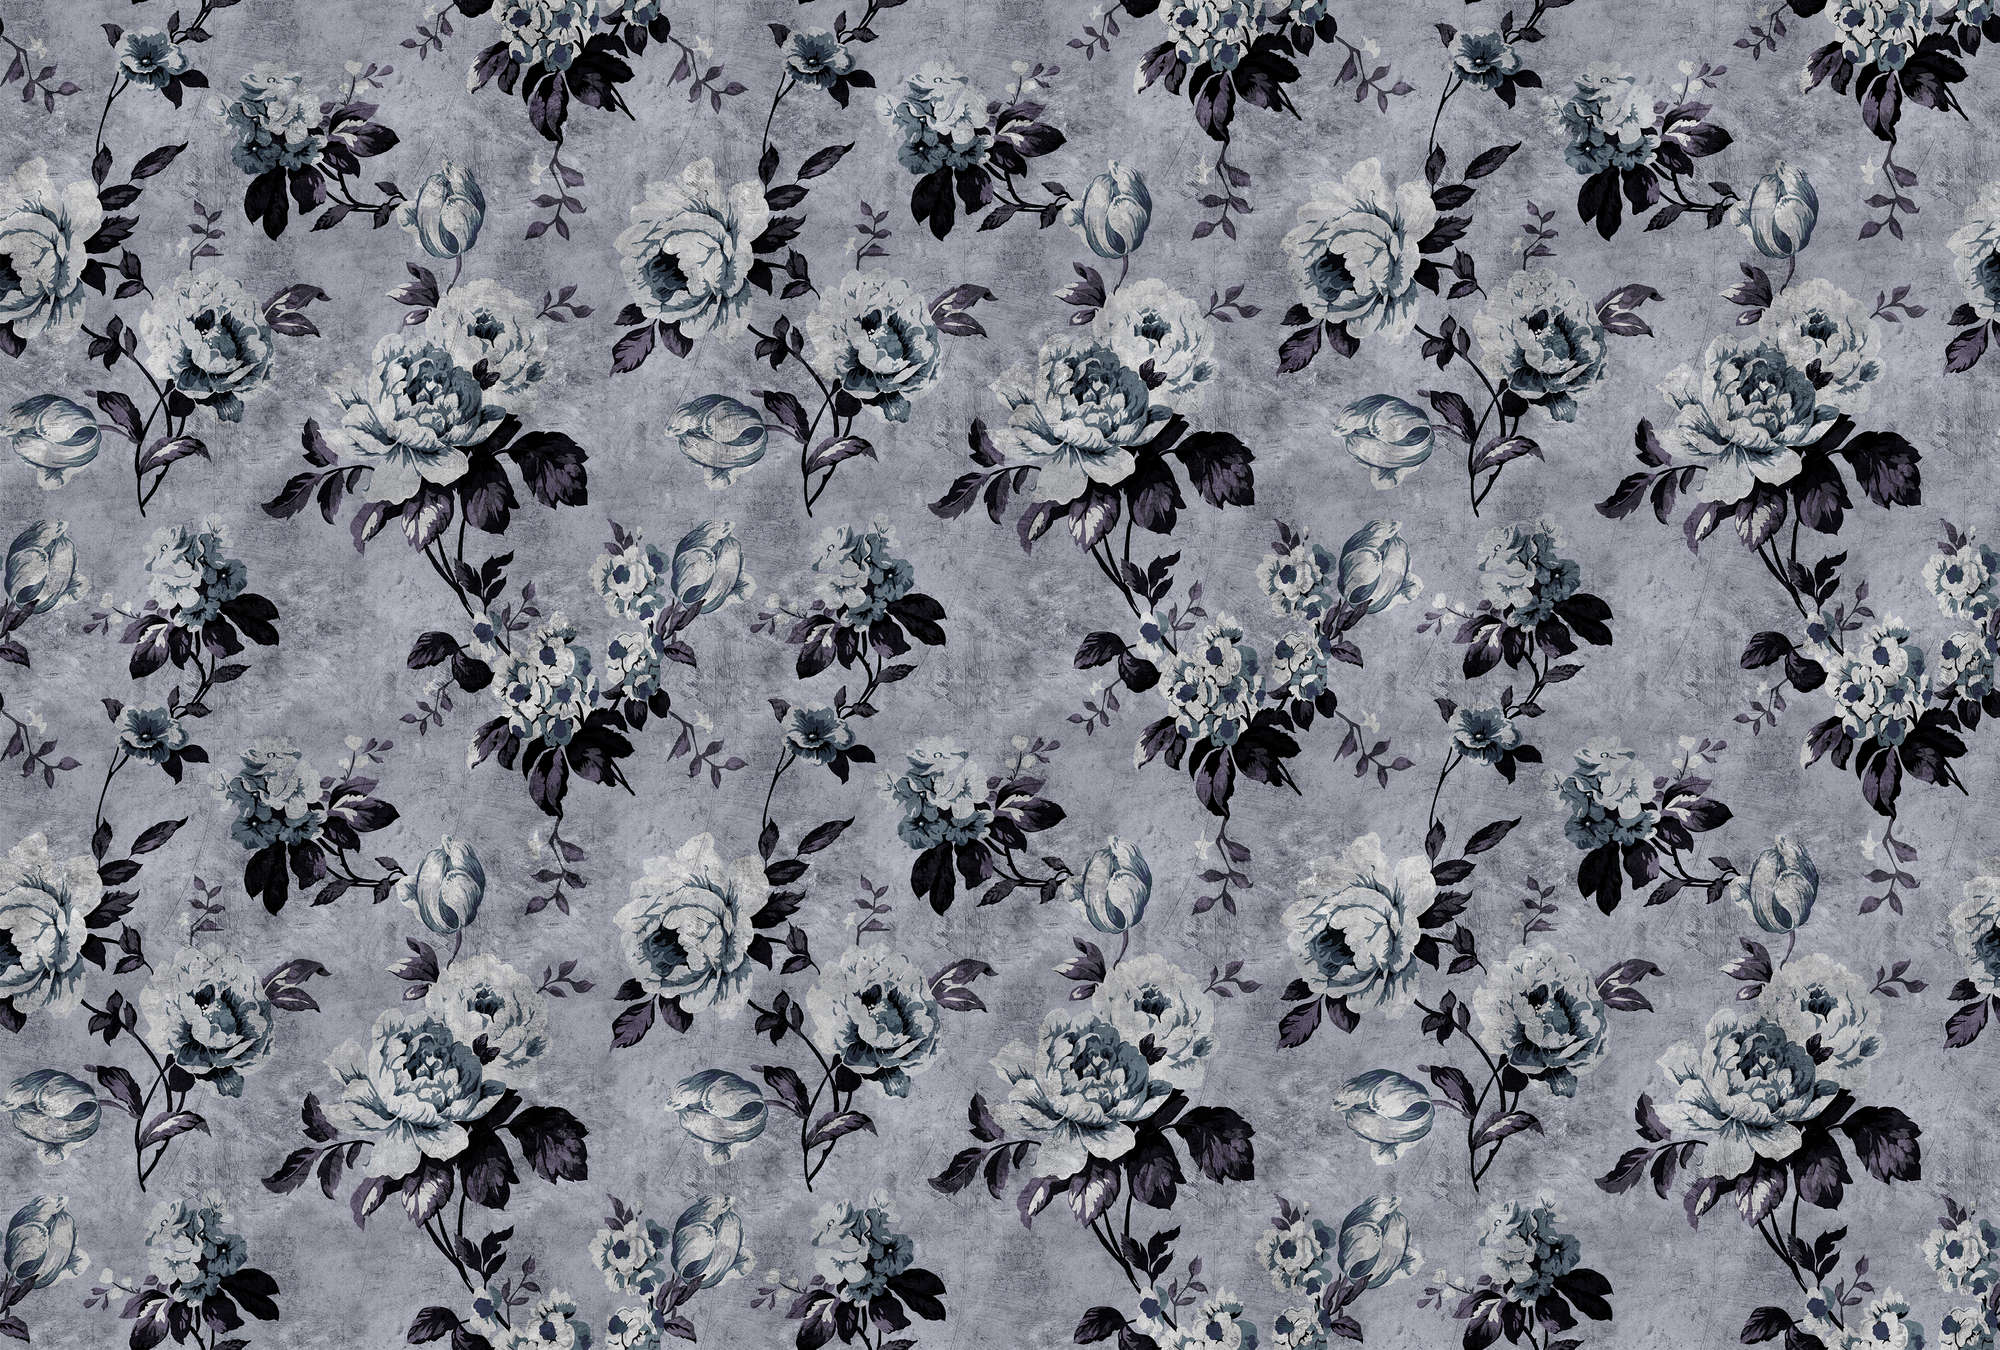             Wild roses 6 - Rosen Fototapete im Retrolook, Grau in kratzer Struktur – Blau, Violett | Mattes Glattvlies
        